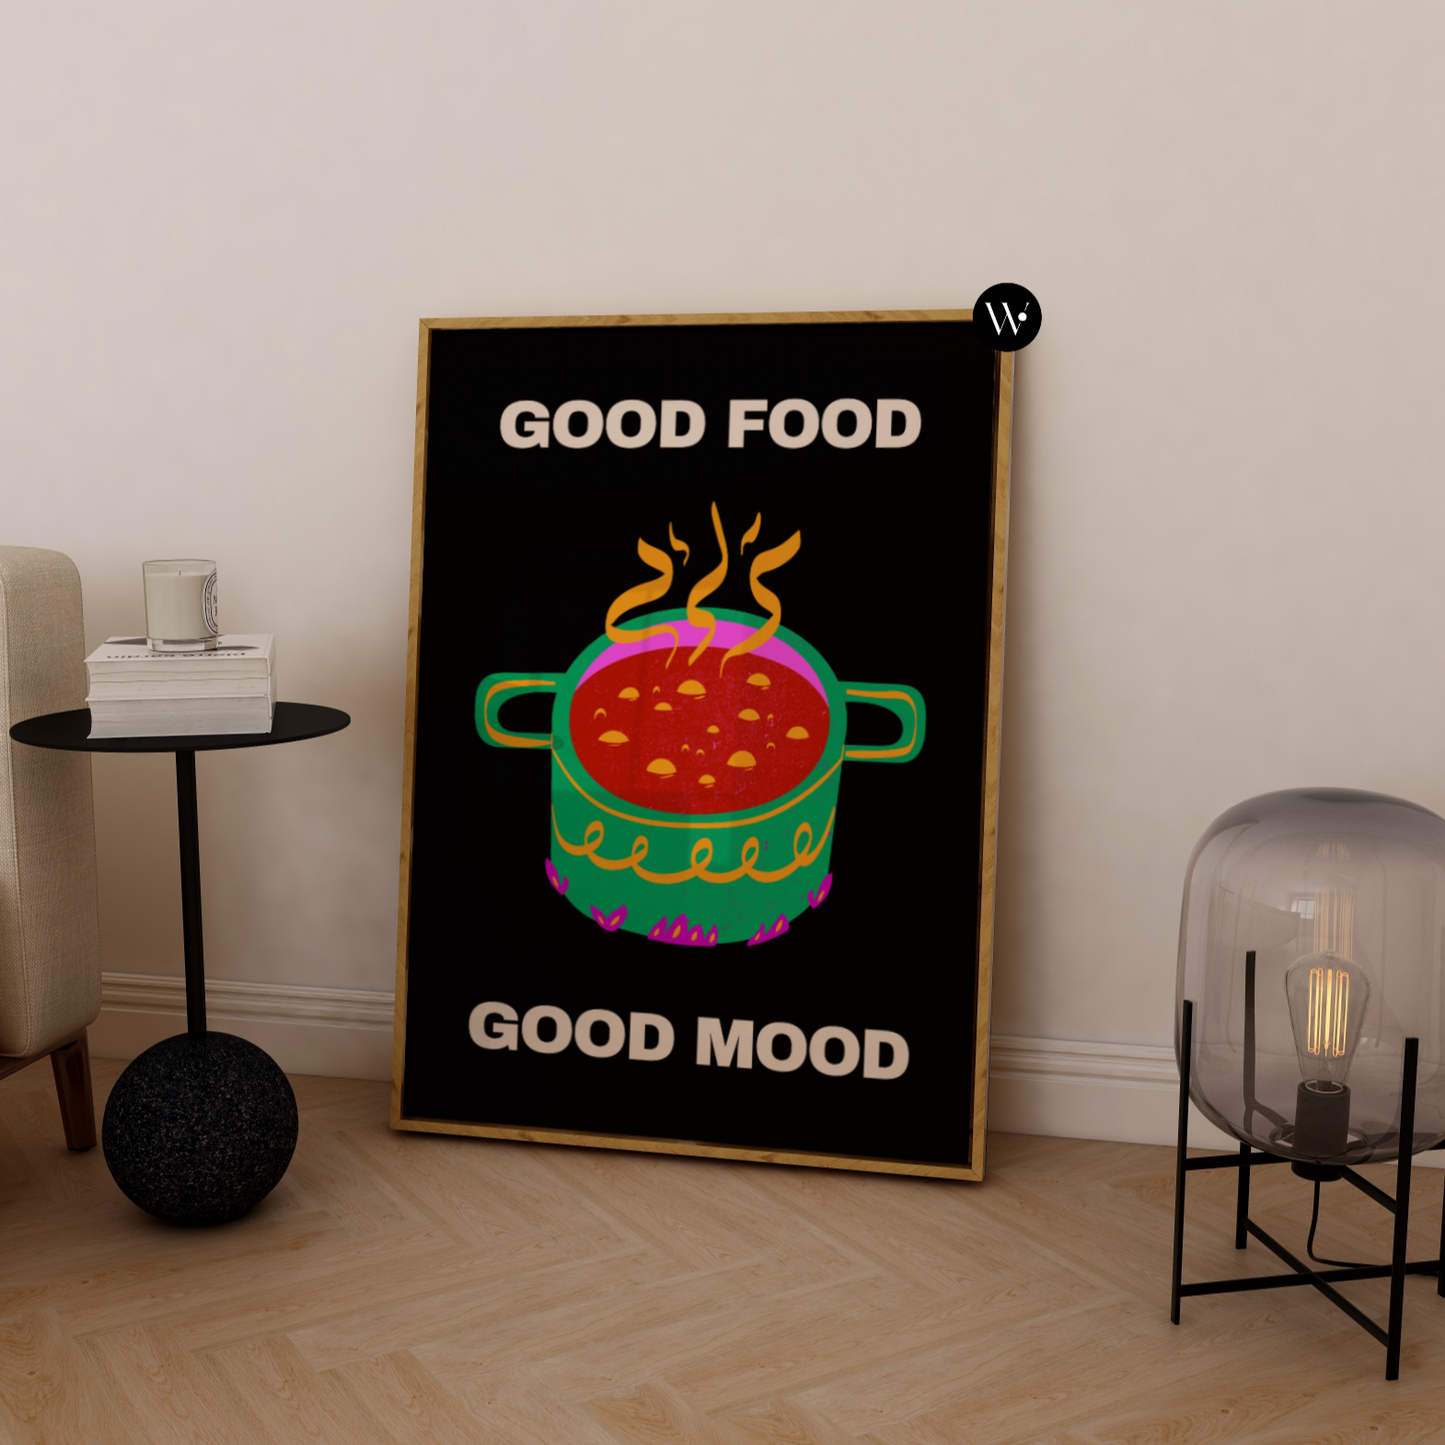 Good Food Good Mood Poster Print